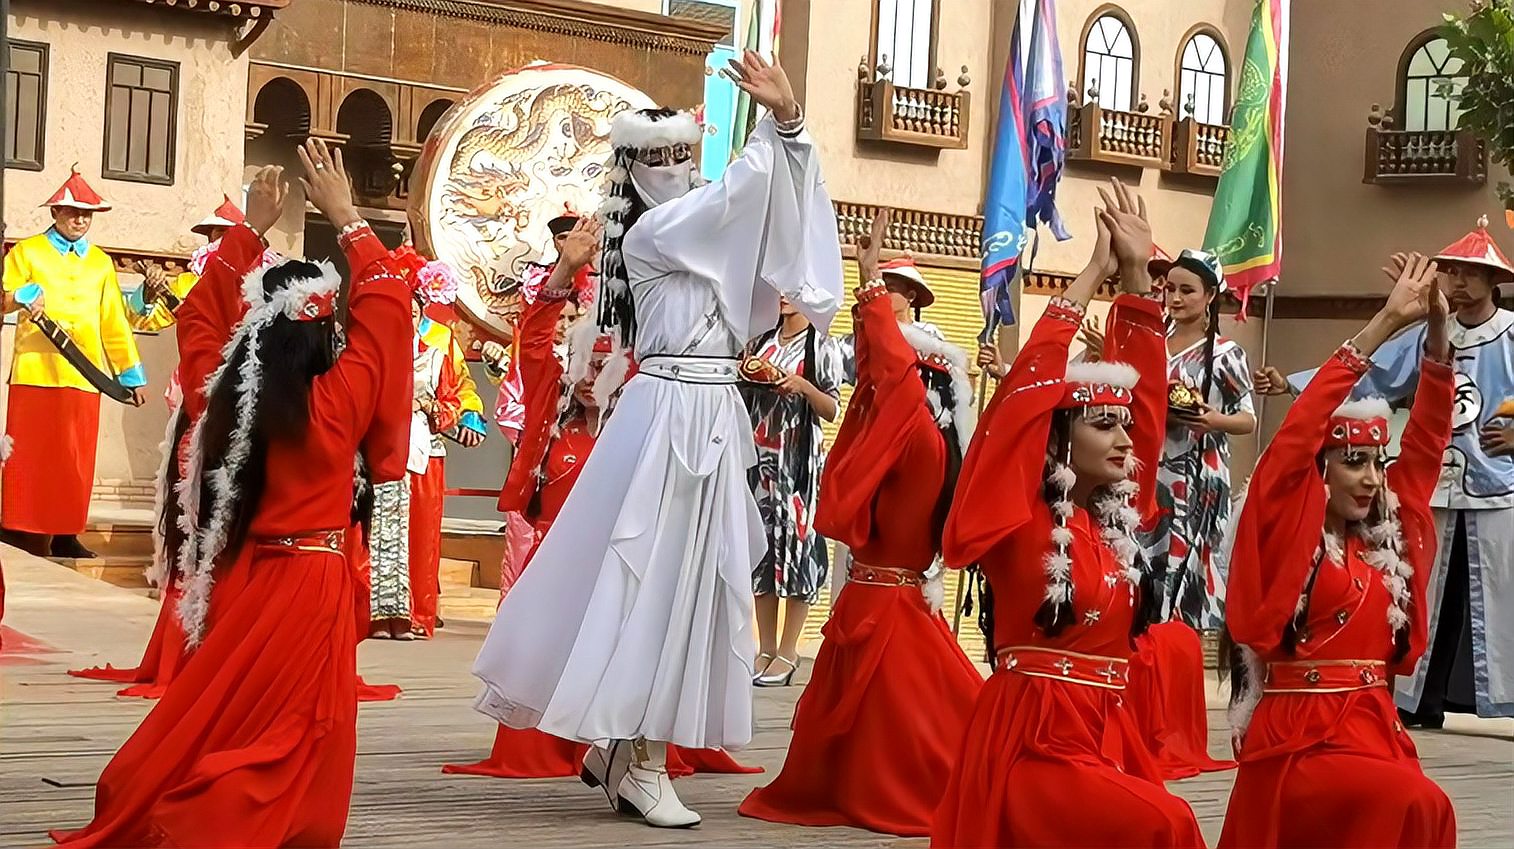 十分精彩的喀什香妃歌舞剧,极具维吾尔族特色,不容错过观看